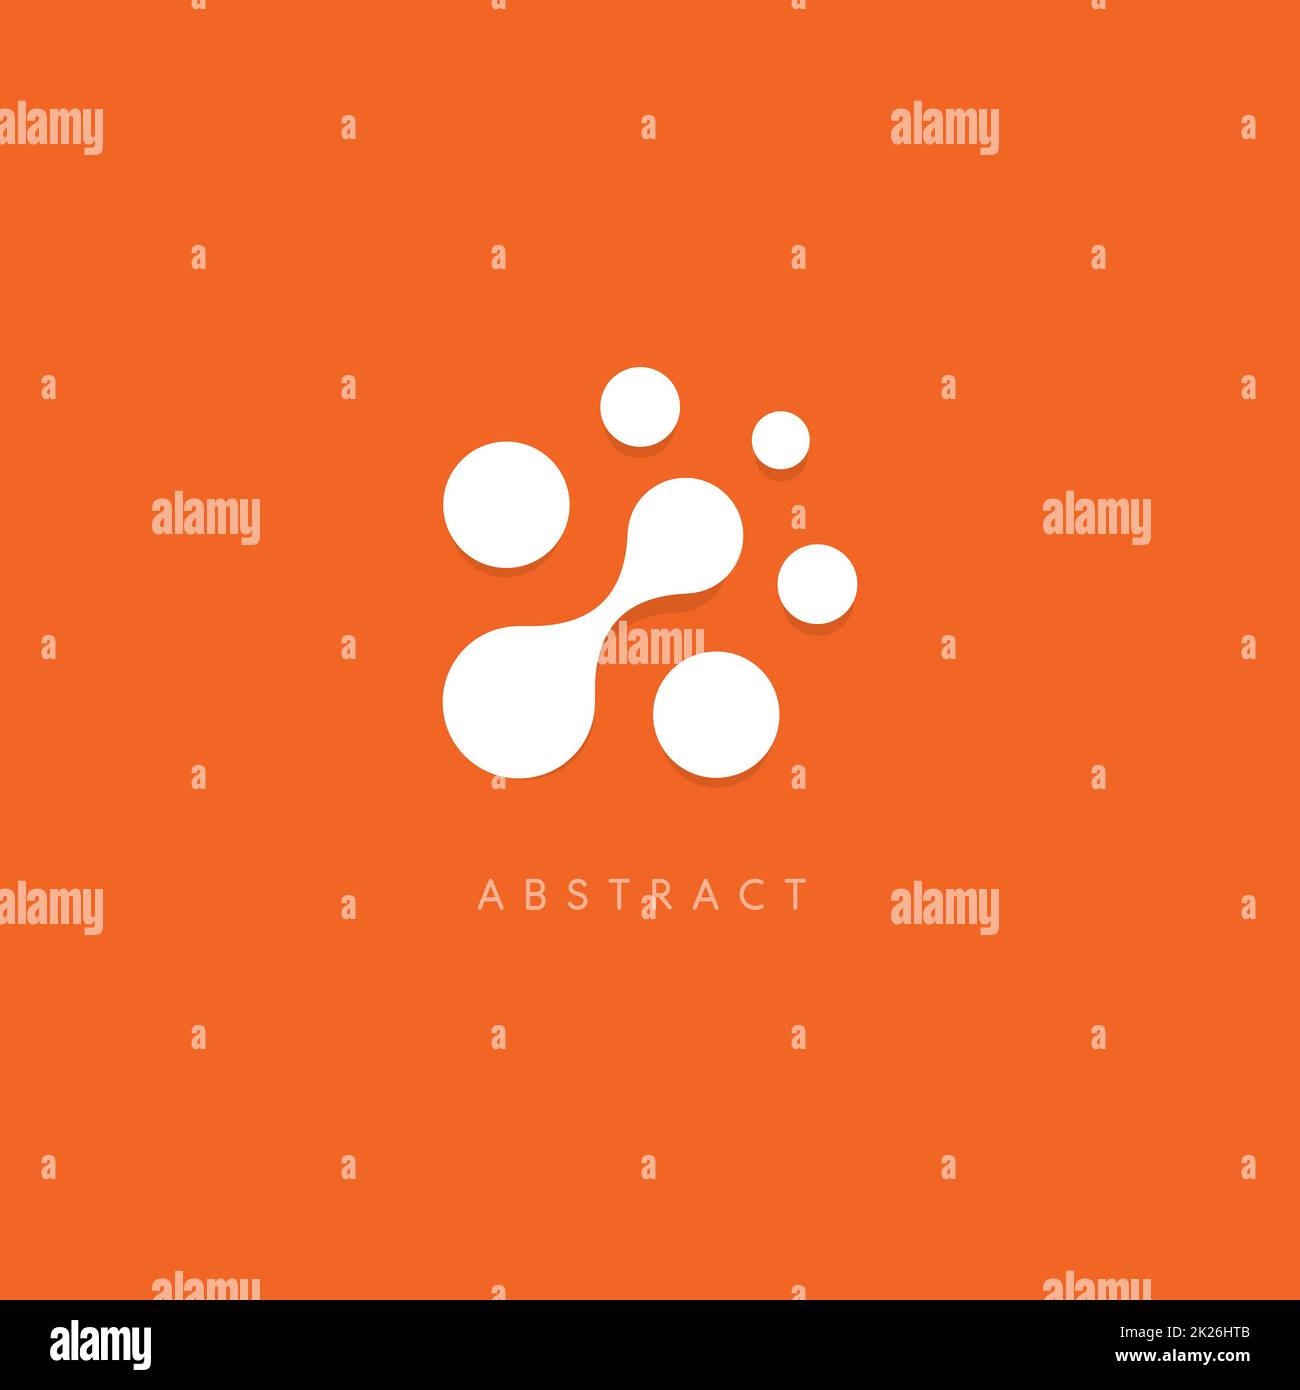 Abstract logo vettoriale. Puntini bianchi su sfondo arancione. Ambienti insoliti logotipo modello. Chip di computer e la relativa icona. Foto Stock